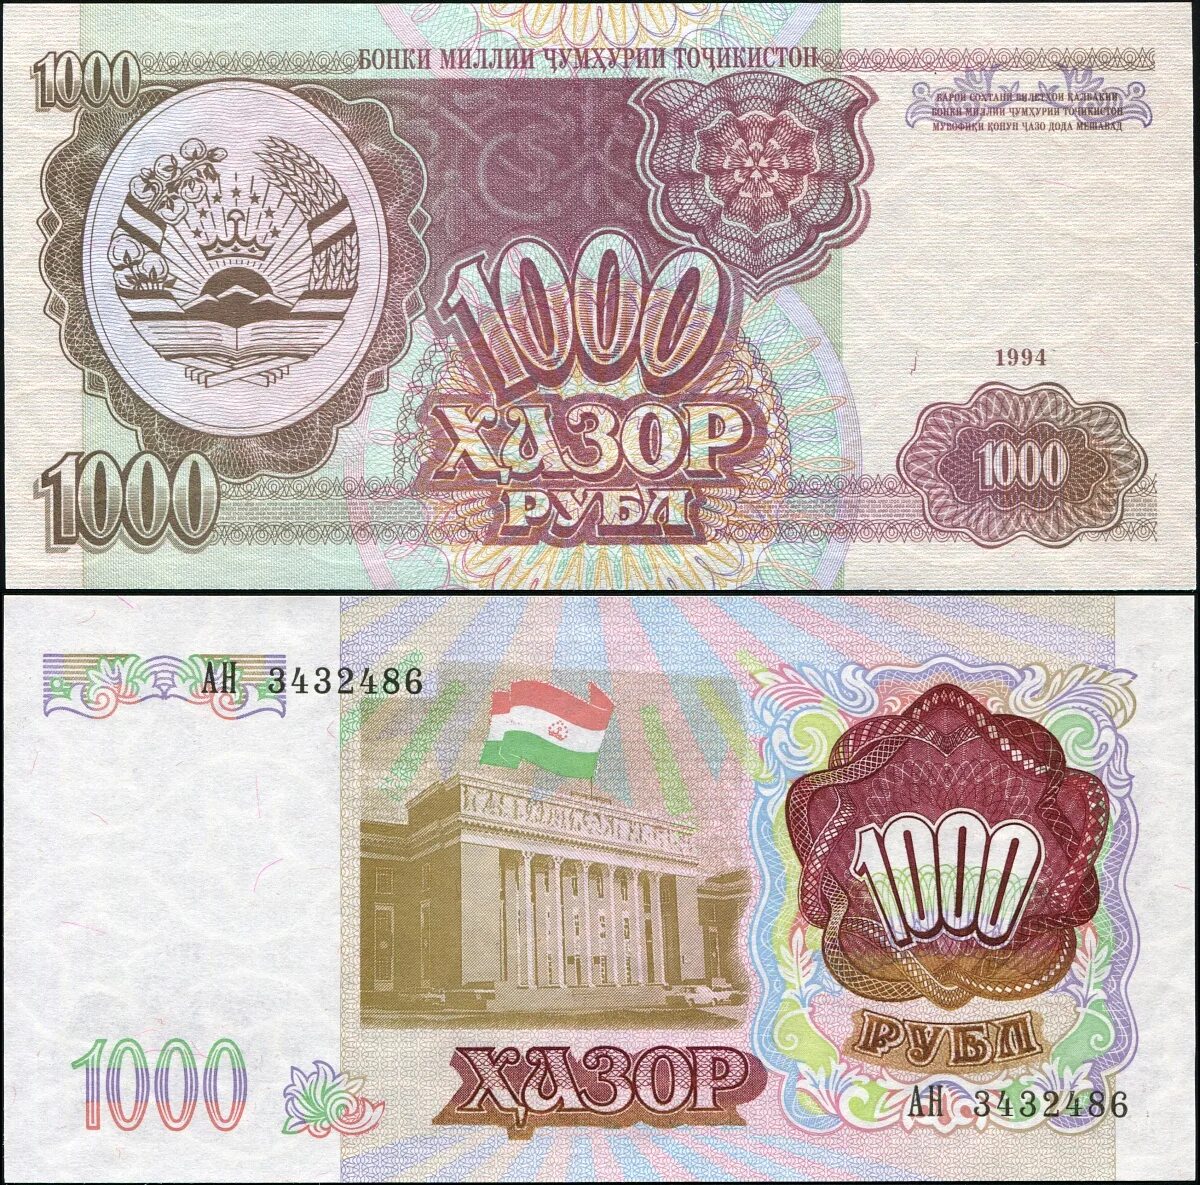 1.000 руб сколько сомони. Таджикистан 1000 рублей 1994 года p-9а. Банкноты Таджикистана 1994. Купюры Таджикистана 1994. Таджикские бумажные деньги.